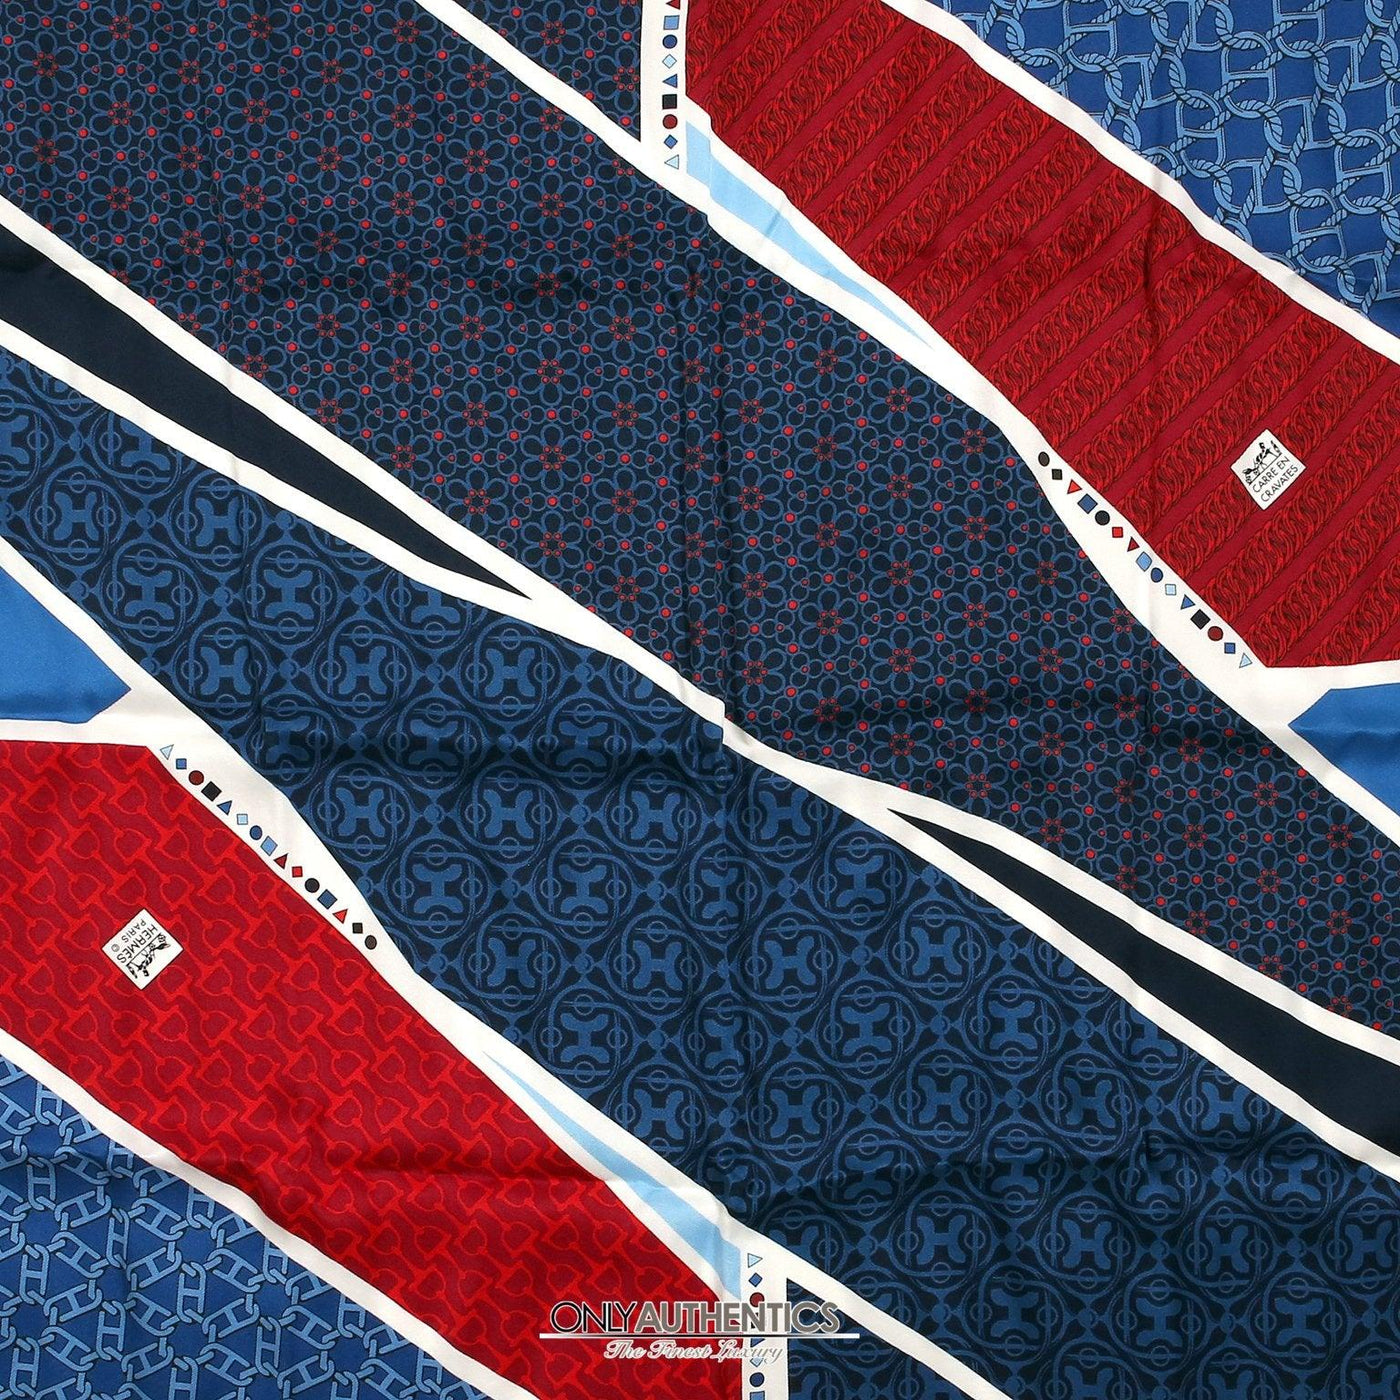 Hermès Carre en Cravates 60cm Silk Scarf - Only Authentics